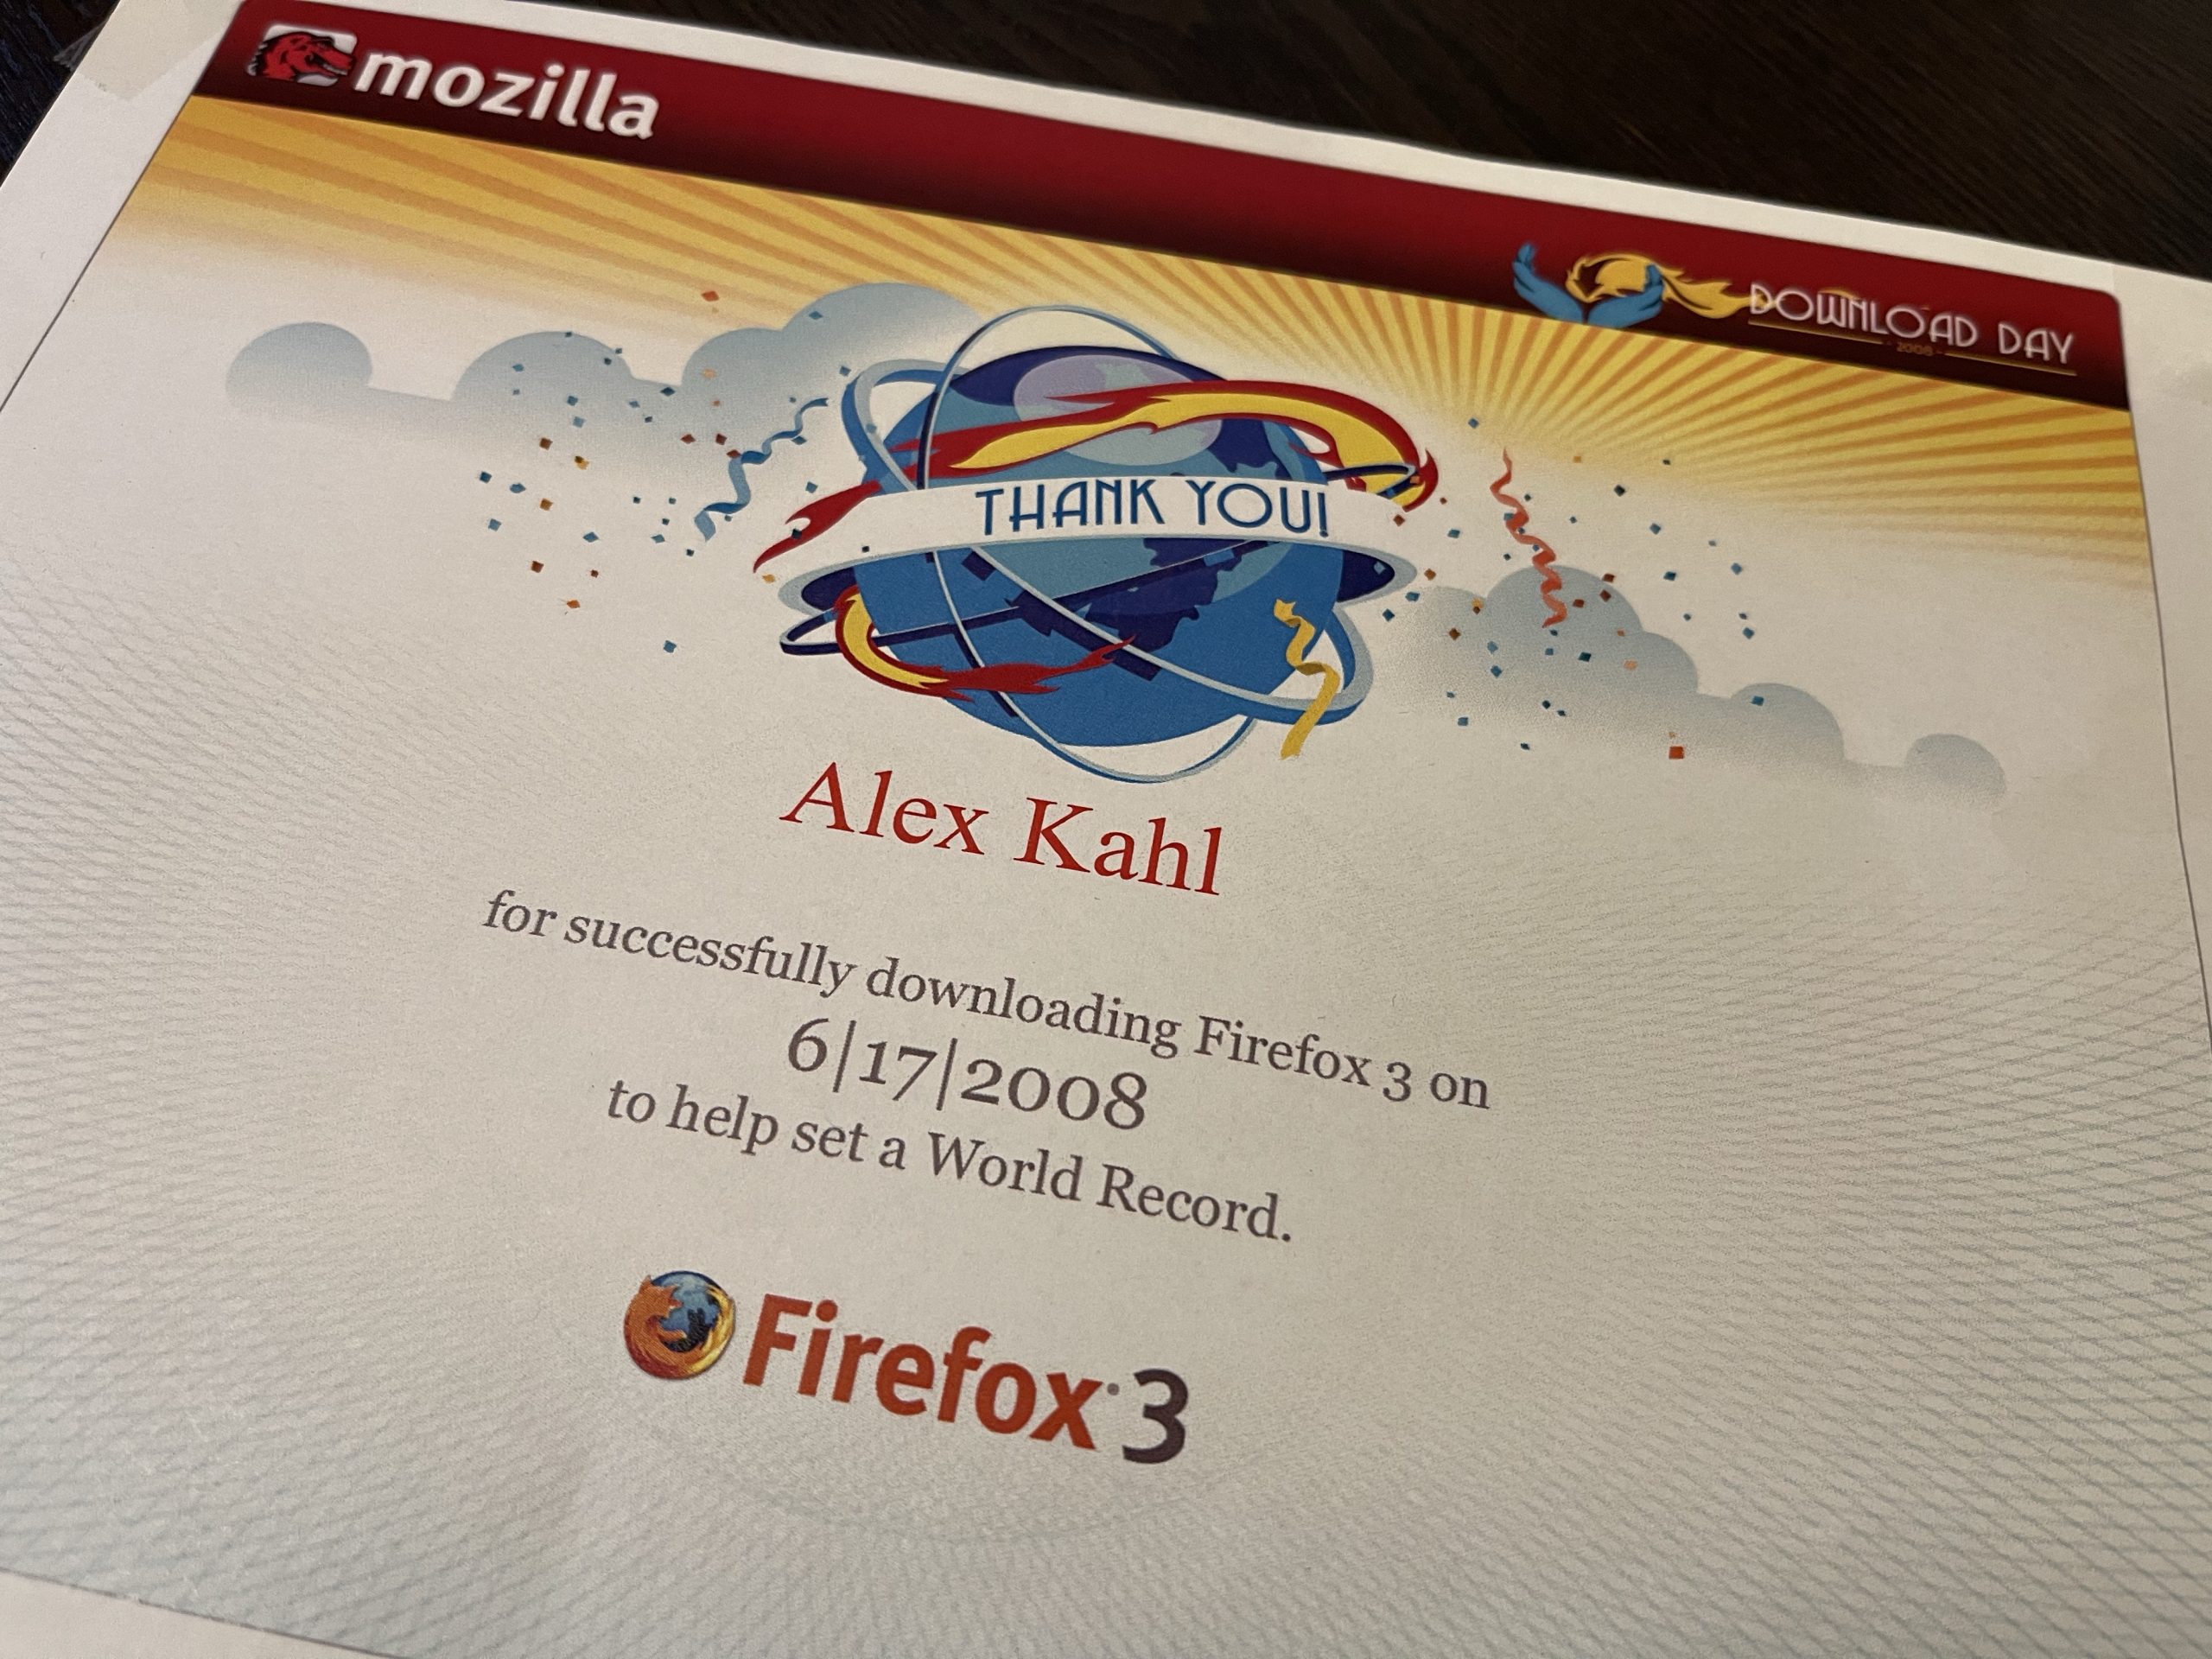 Aufräumfund: Urkunde zum Download von Mozilla Firefox 3 :-)